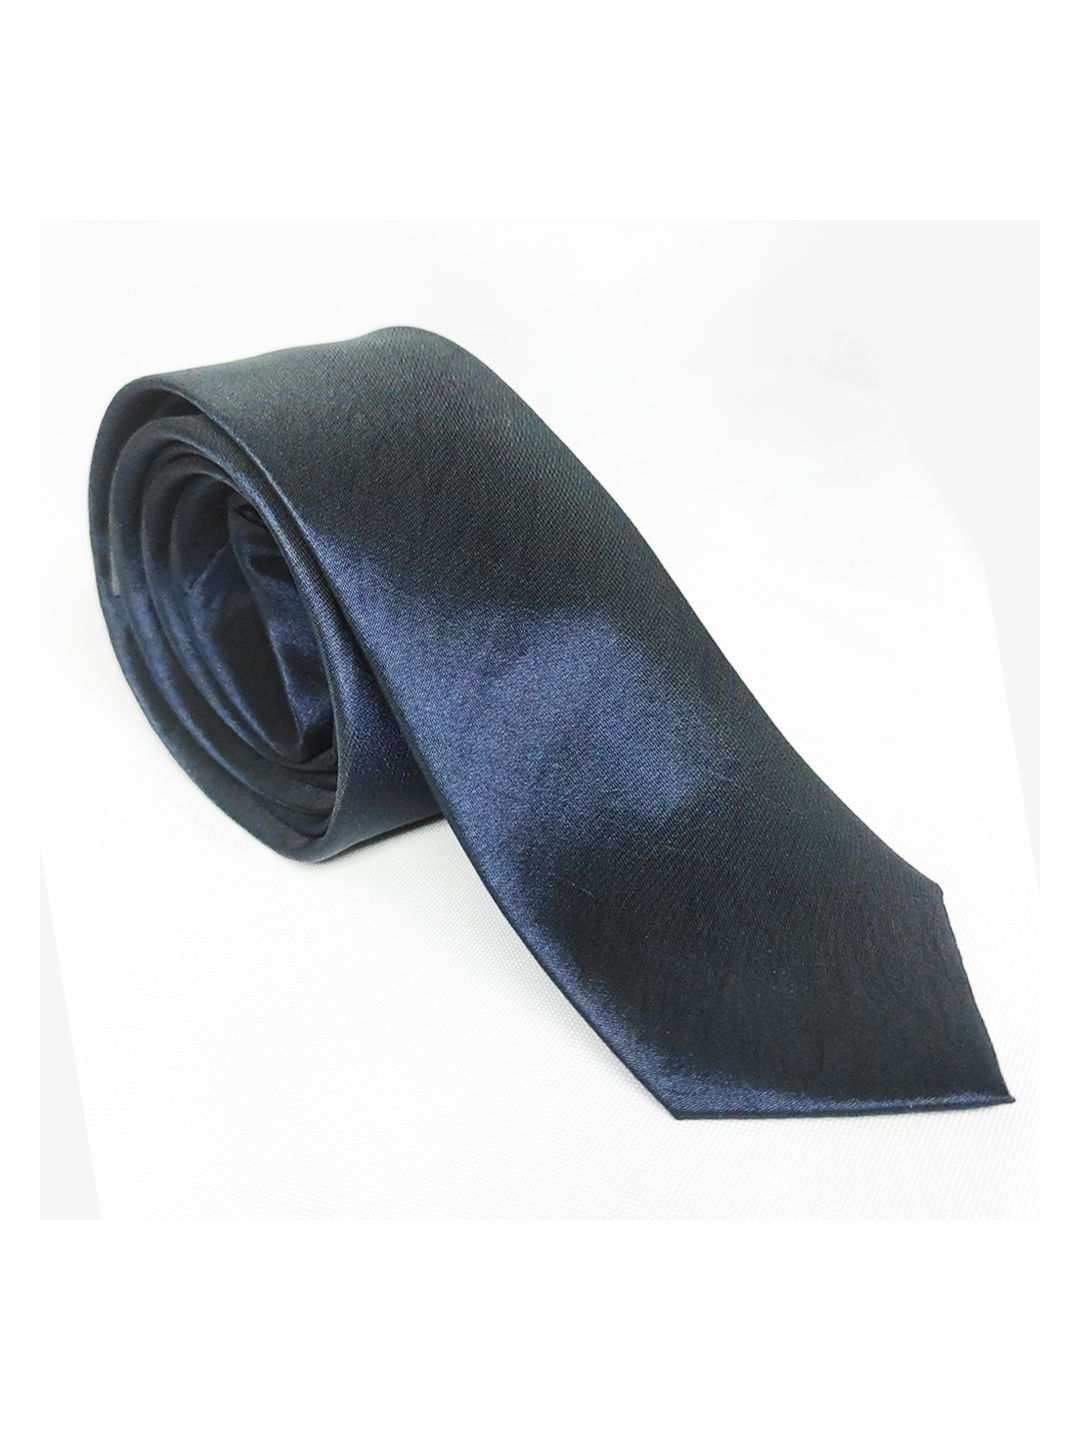 Gravata Slim Colors Azul Escuro - Roberto Alfaiate | Trajes fino sob medida